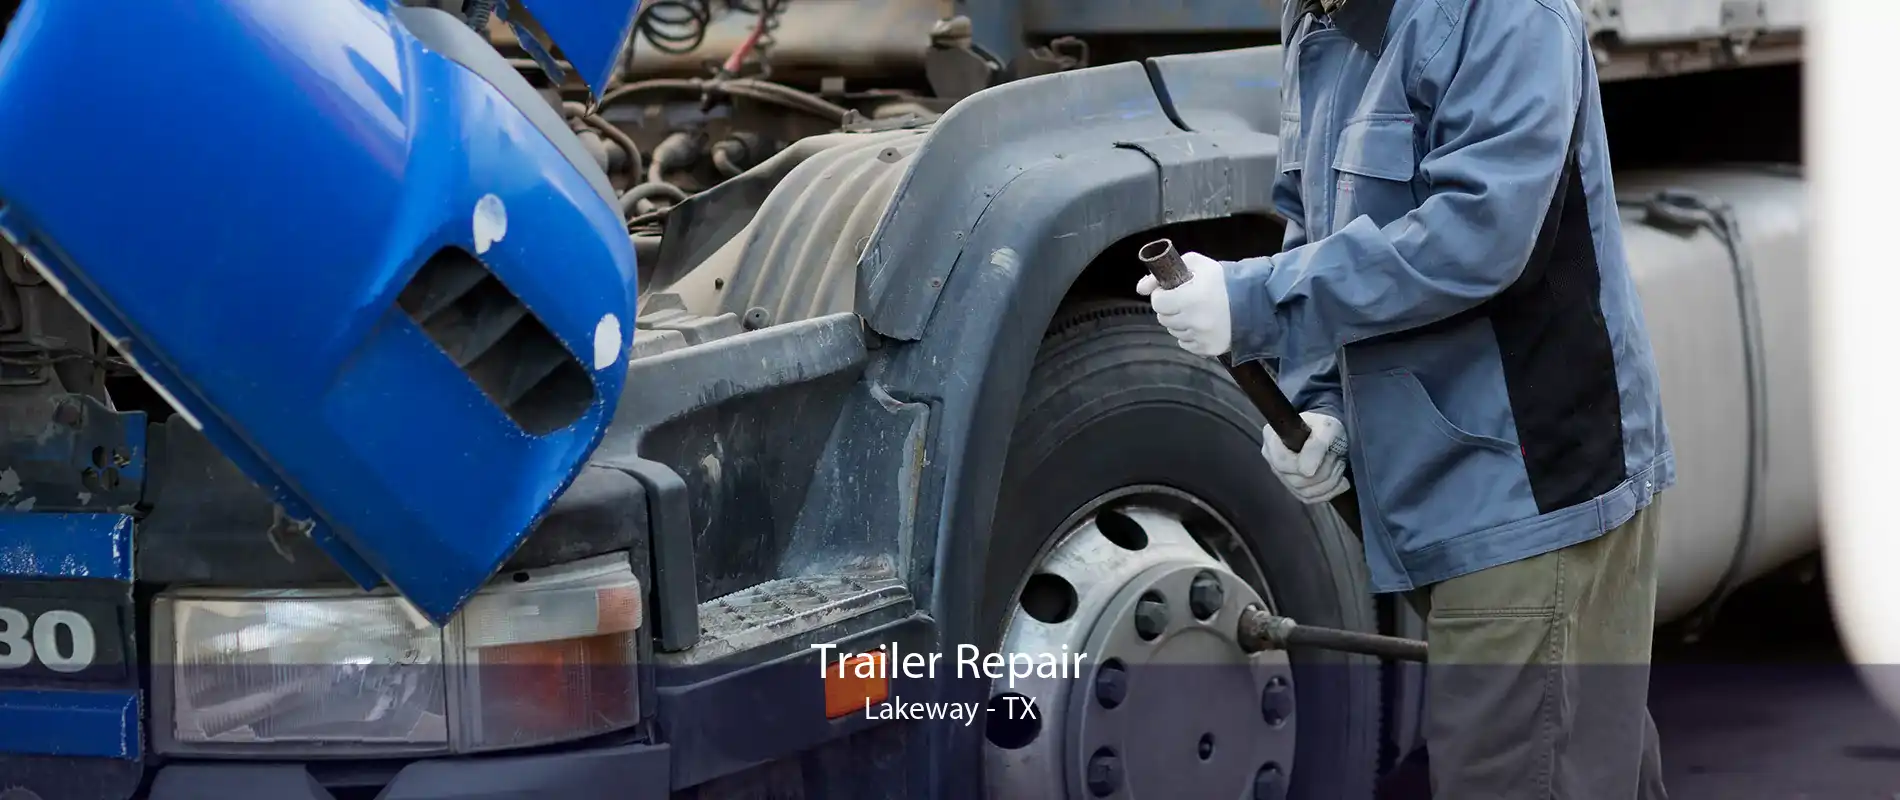 Trailer Repair Lakeway - TX